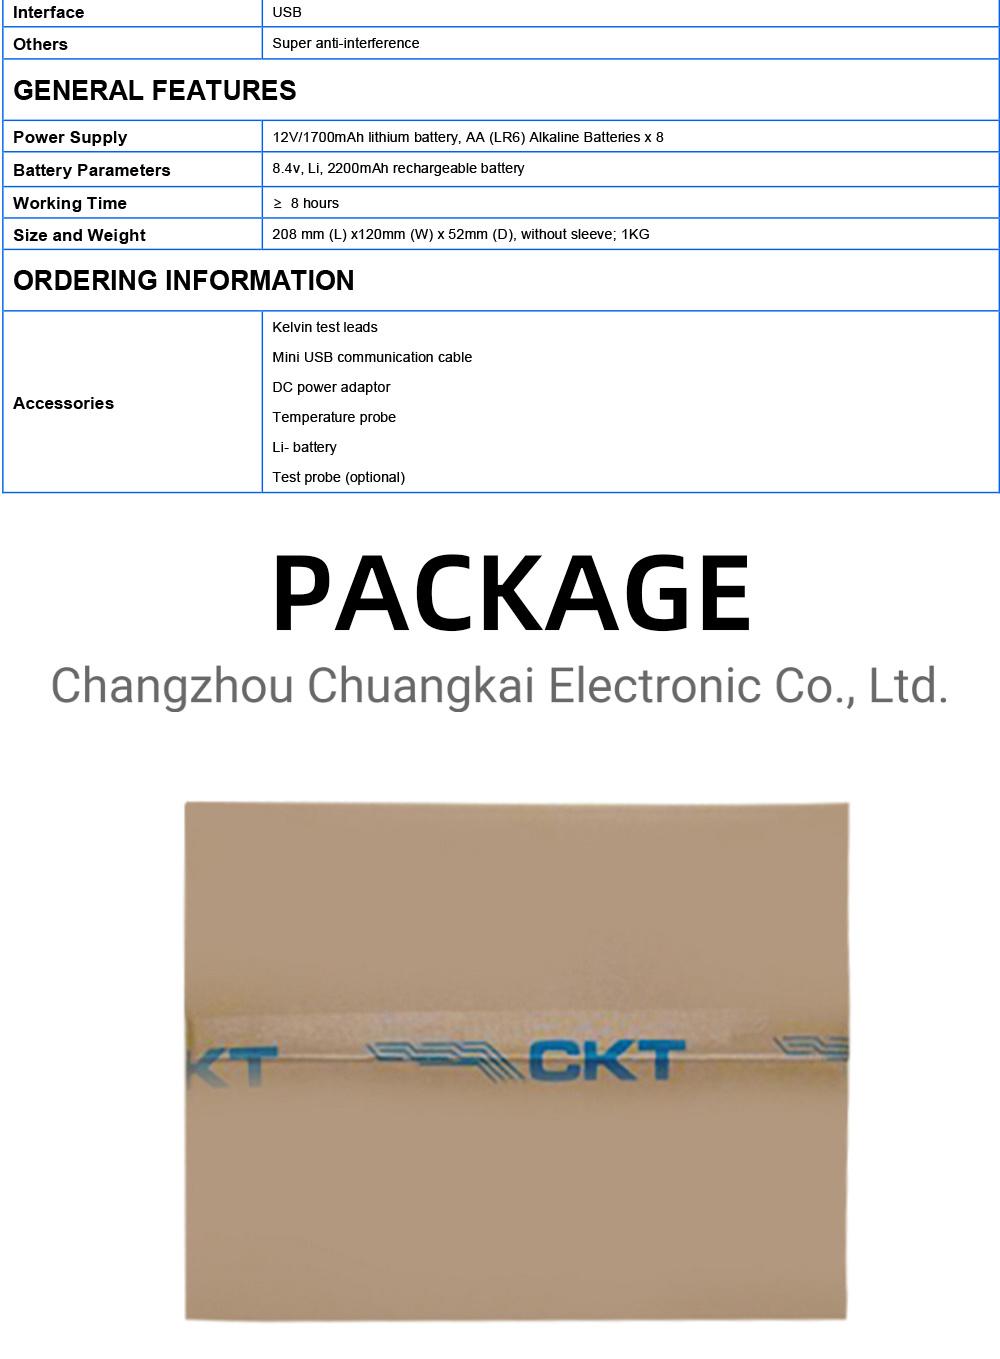 Ckt3554D Handheld Type Automotive Voltage Tester Battery Phone Tester